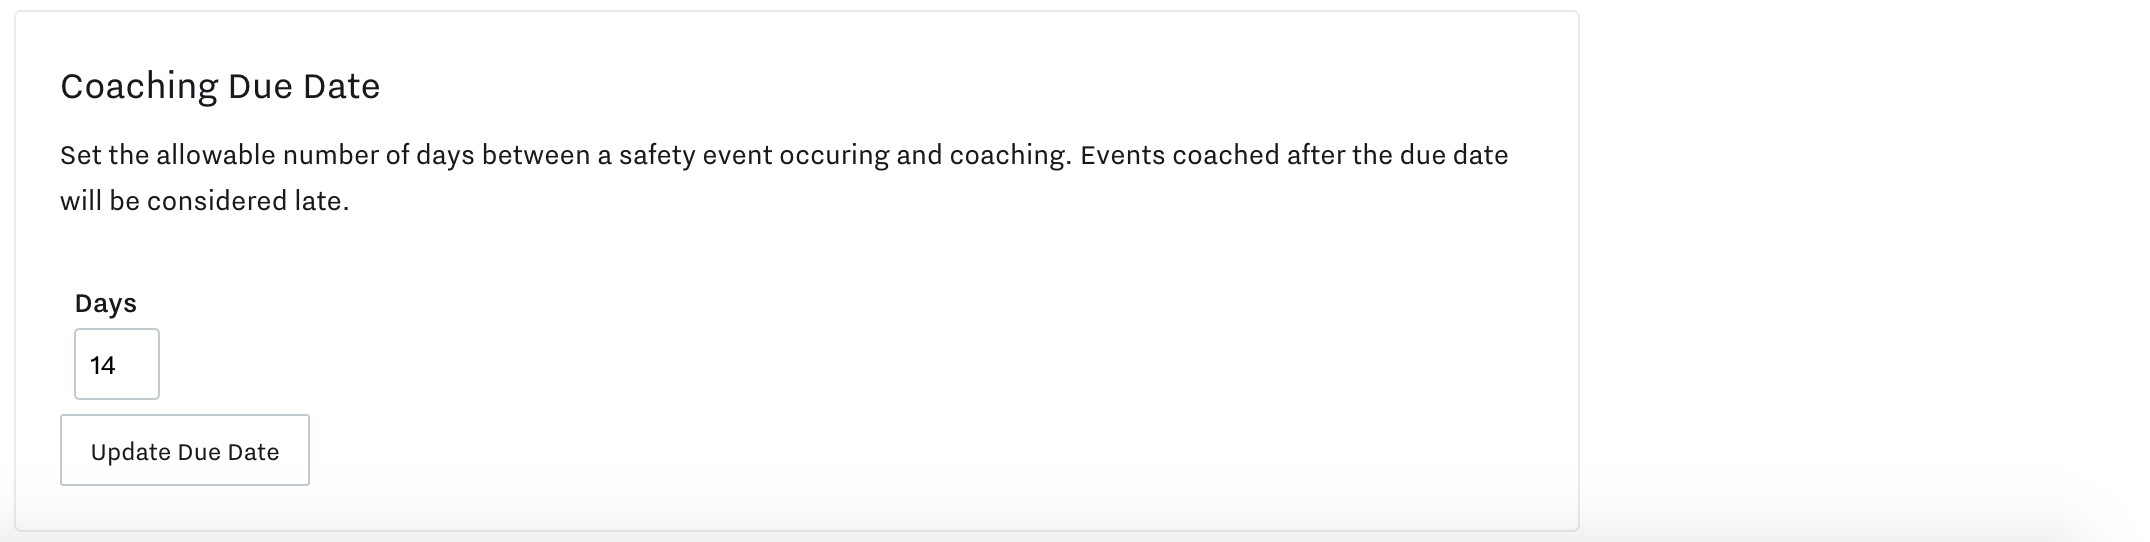 coaching-due-date-setting.png